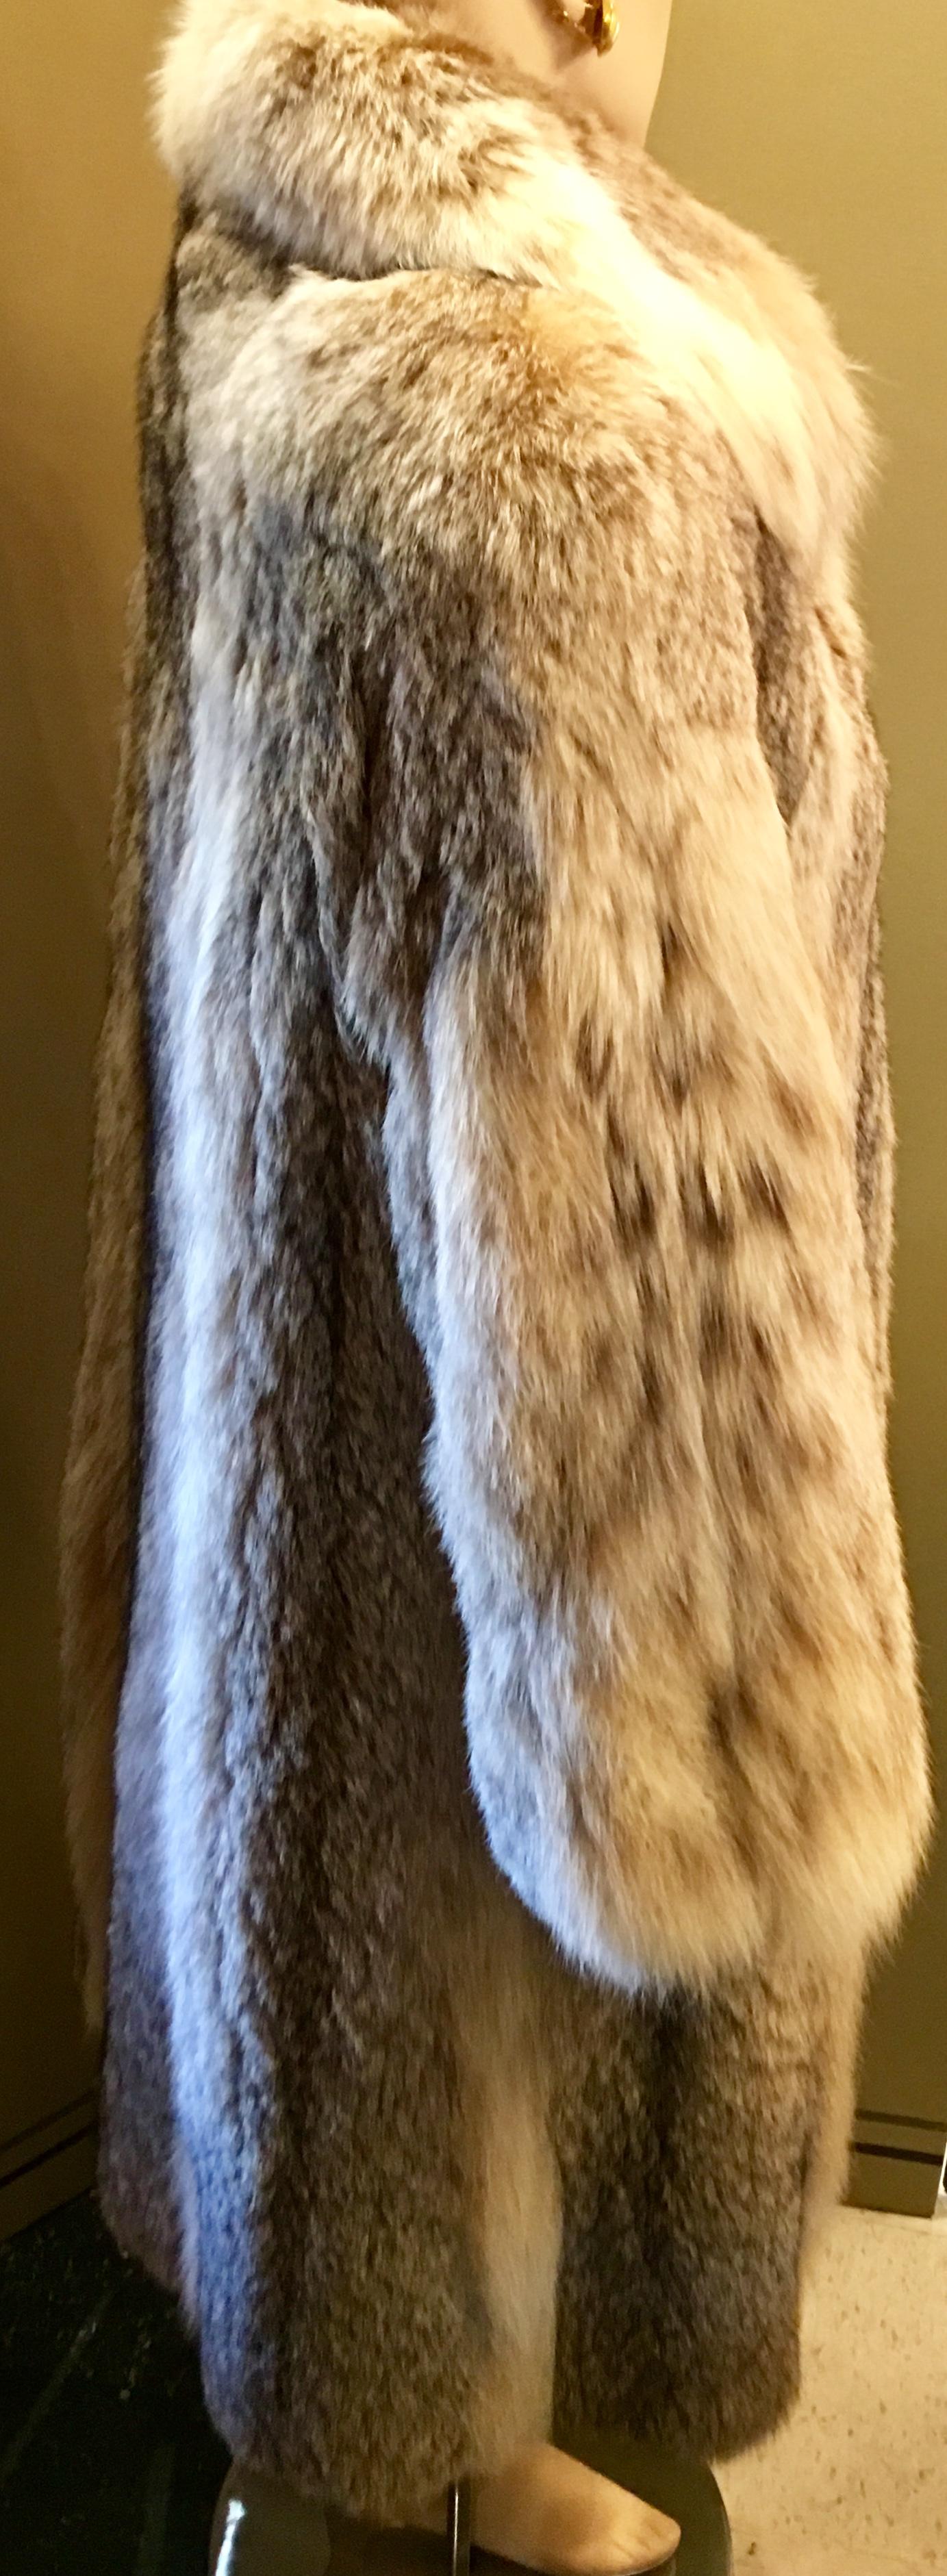 Women's Sumptuous Siberian Lynx Fur Coat by Revillion Paris New York Full Length